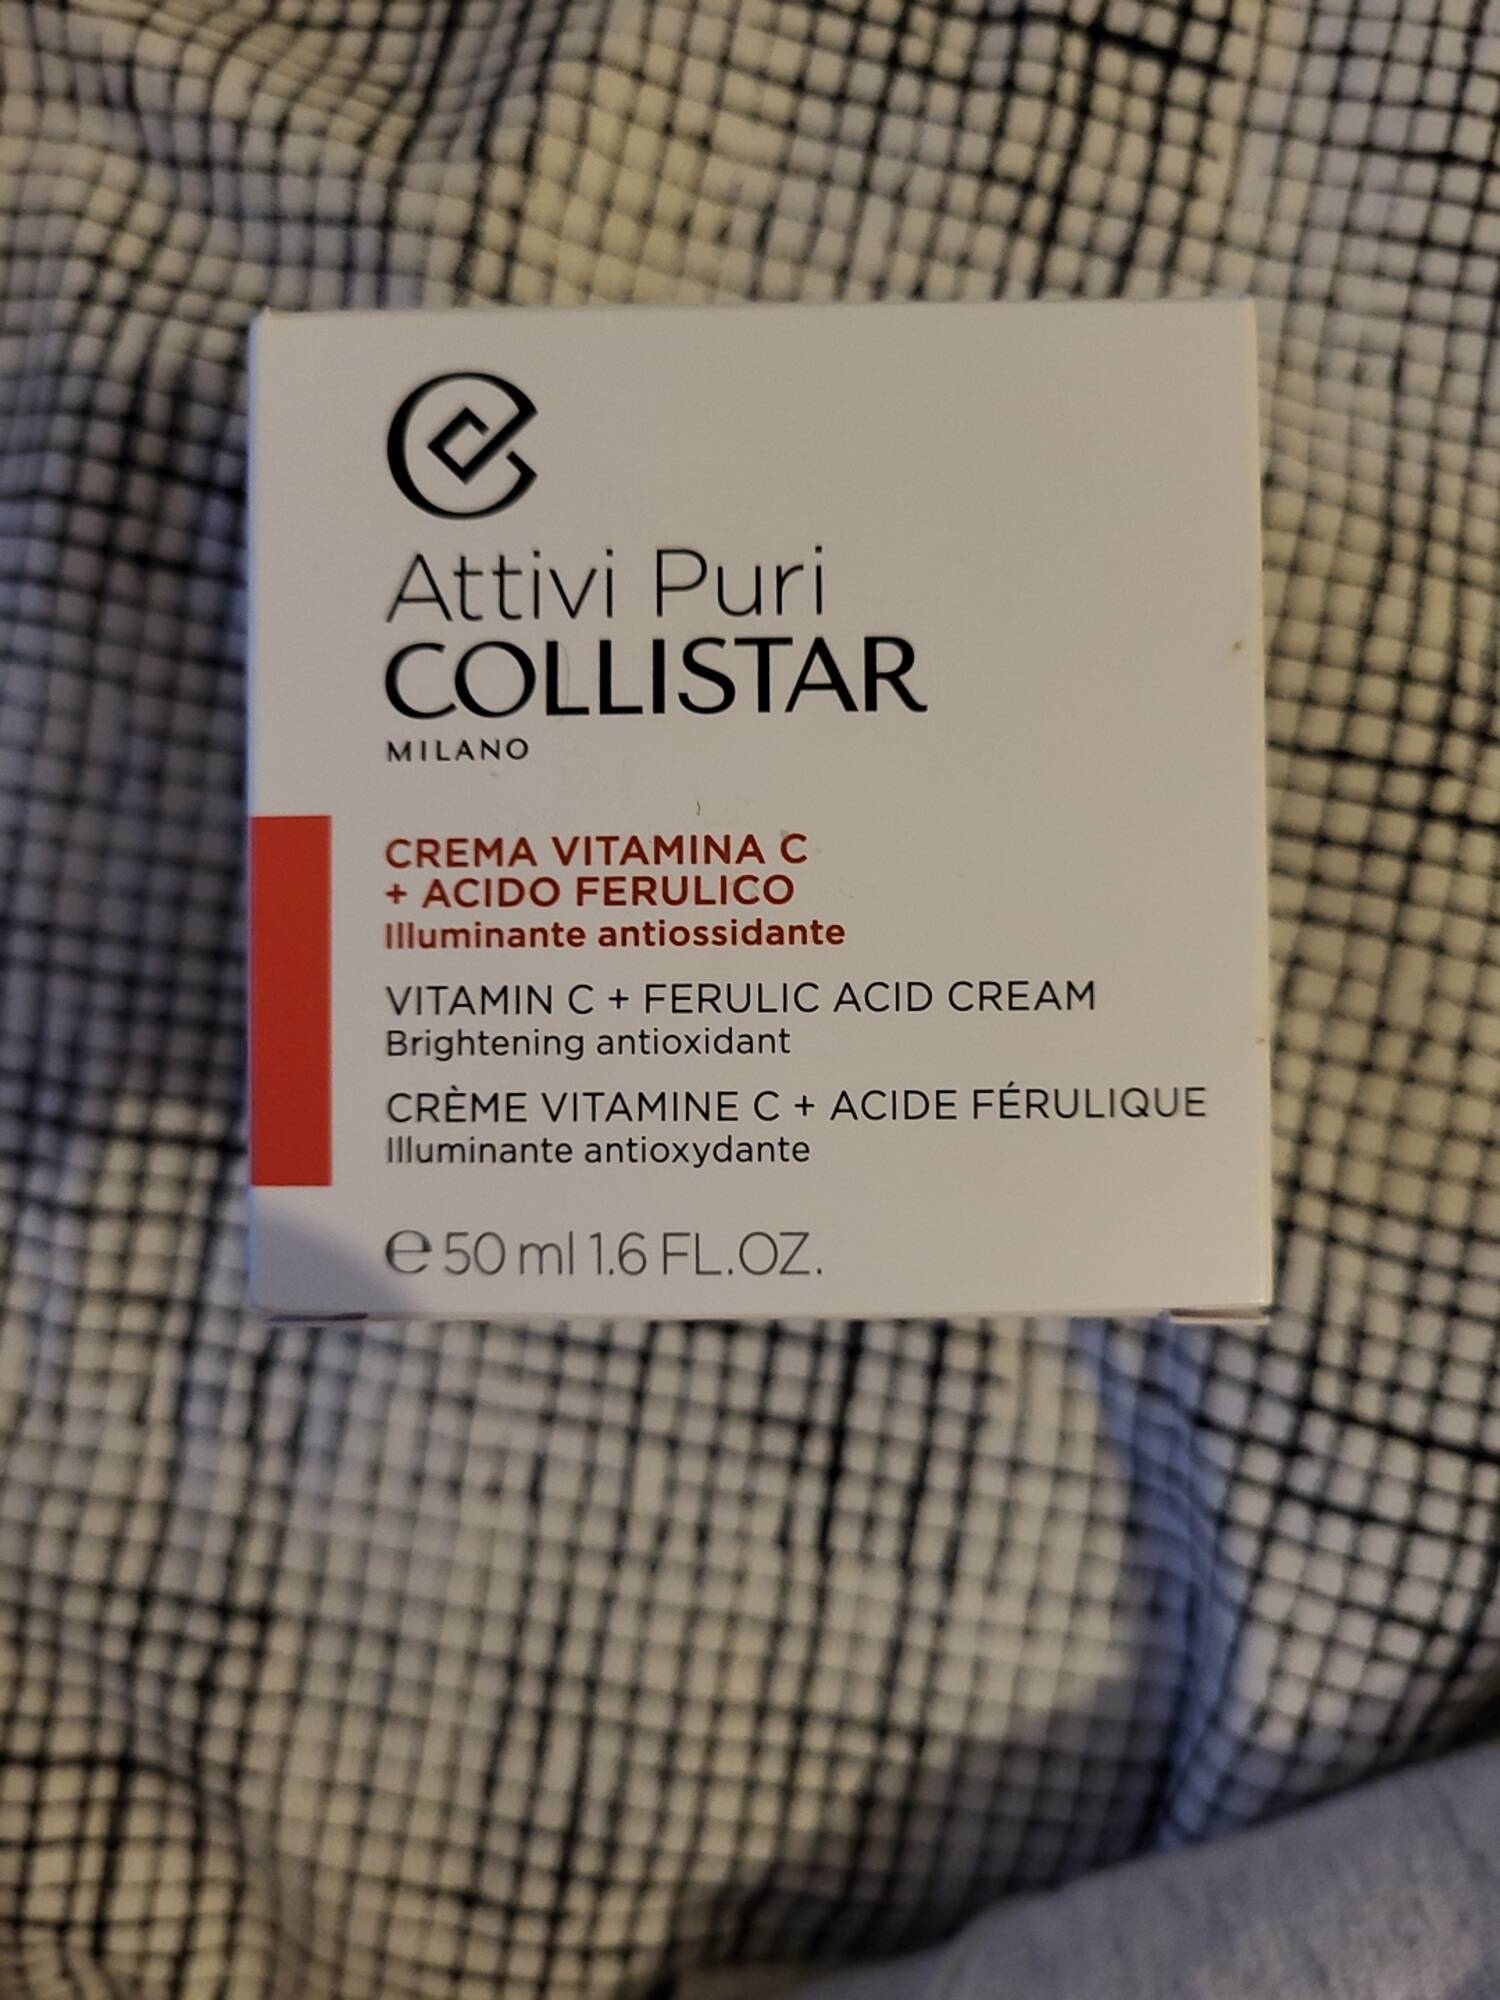 COLLISTAR - Attivi puri - Crème vitamine C + acide férulique